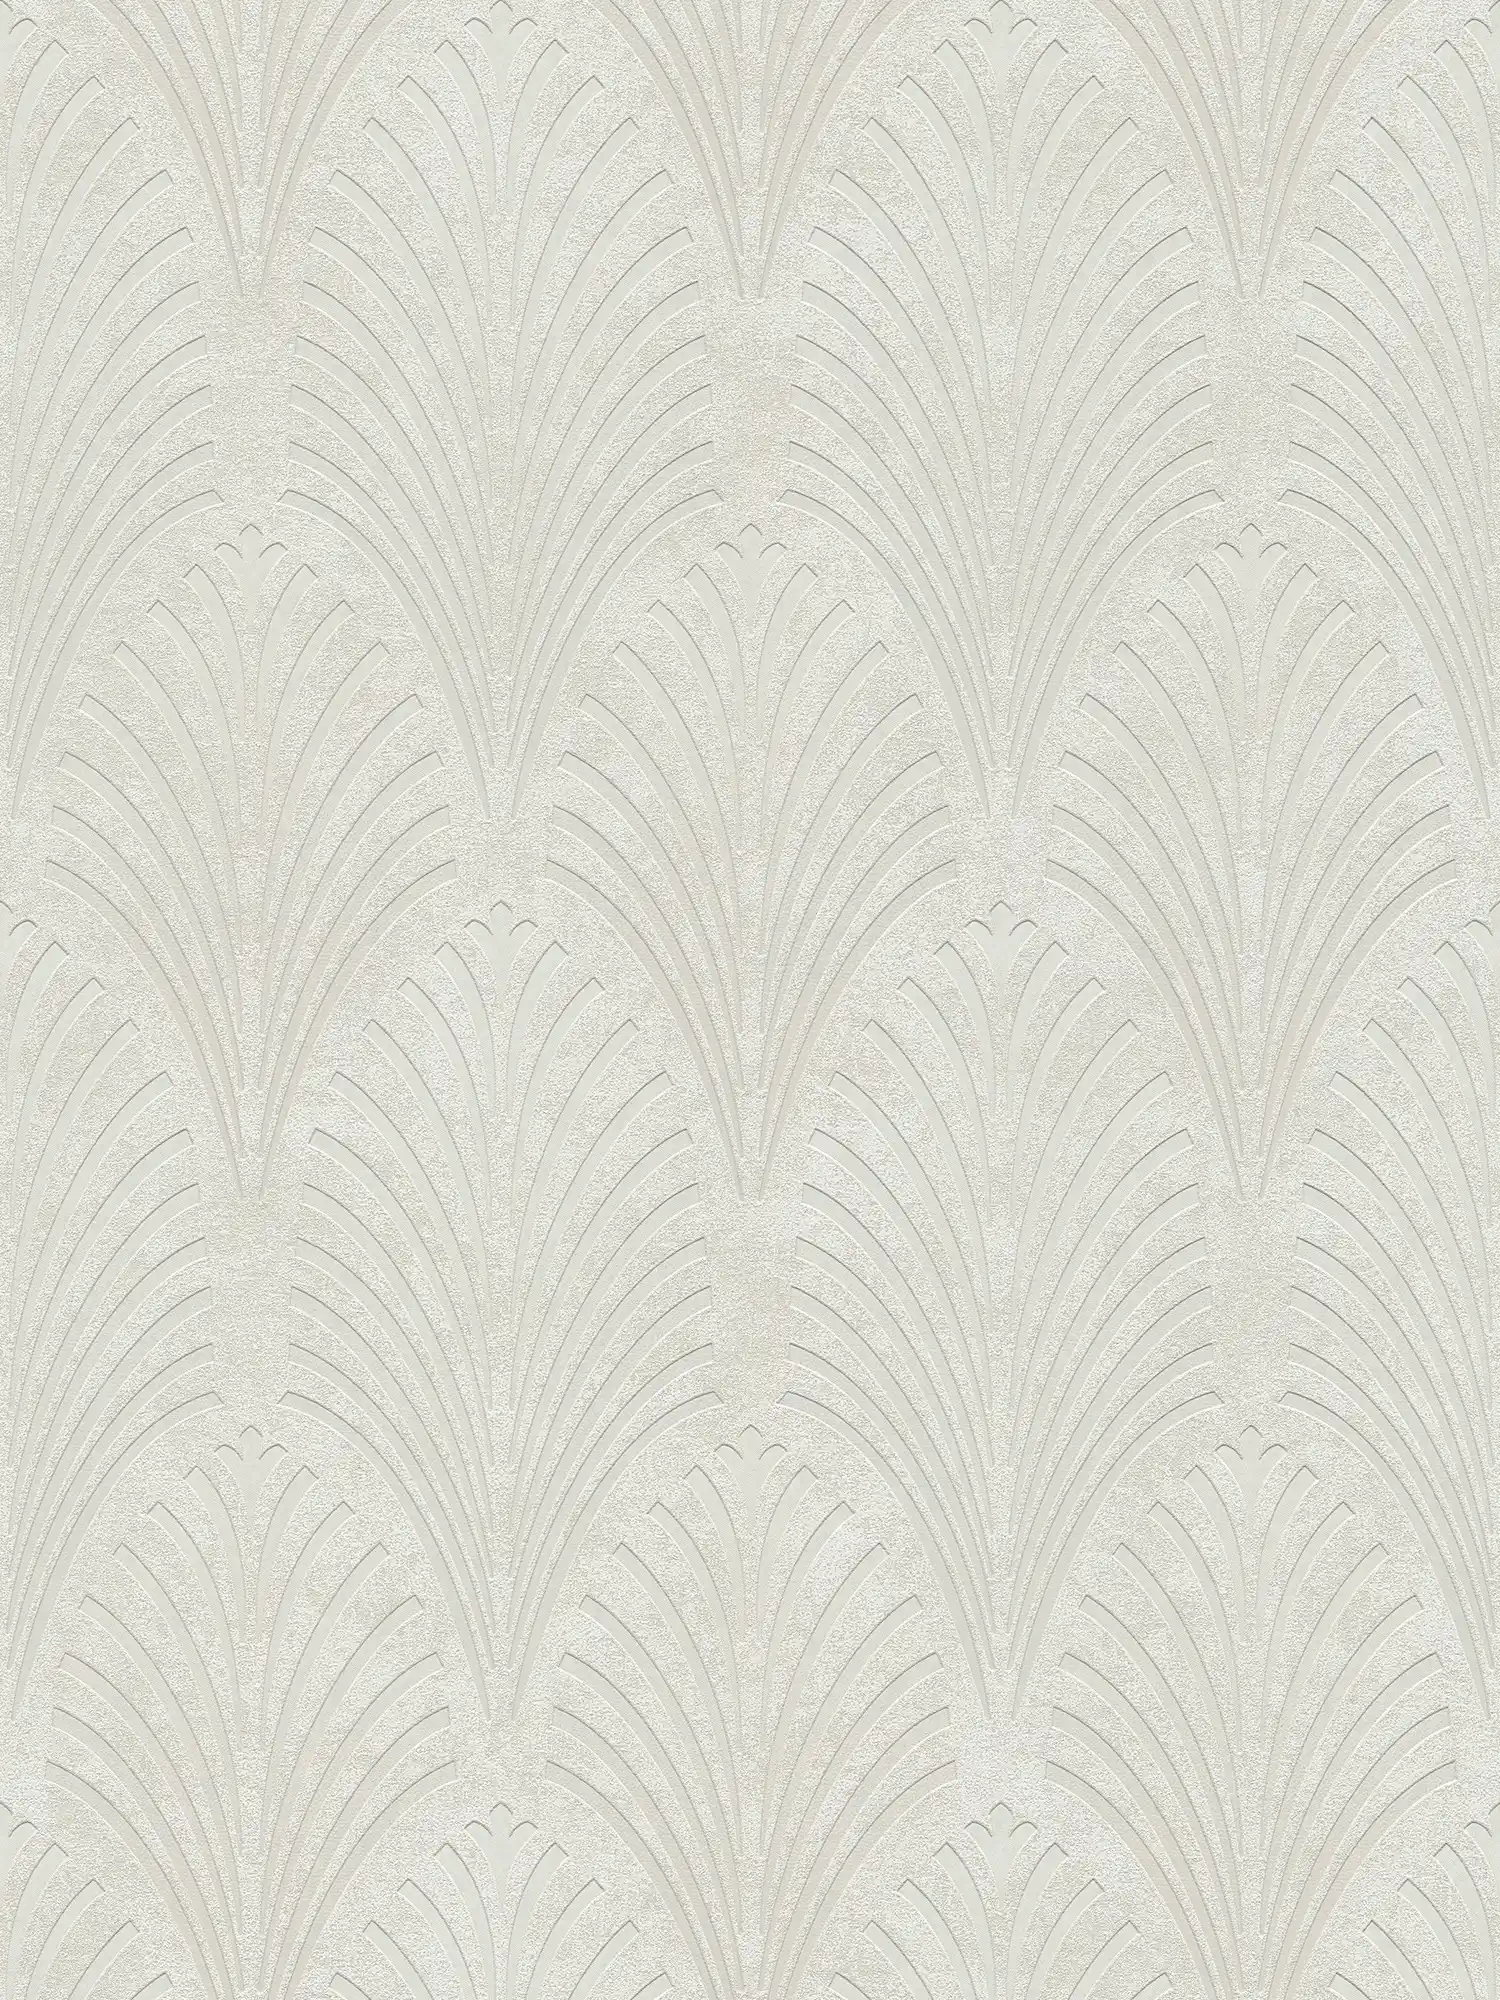 Papier peint rétro style art déco avec motifs géométriques - crème, gris, beige
